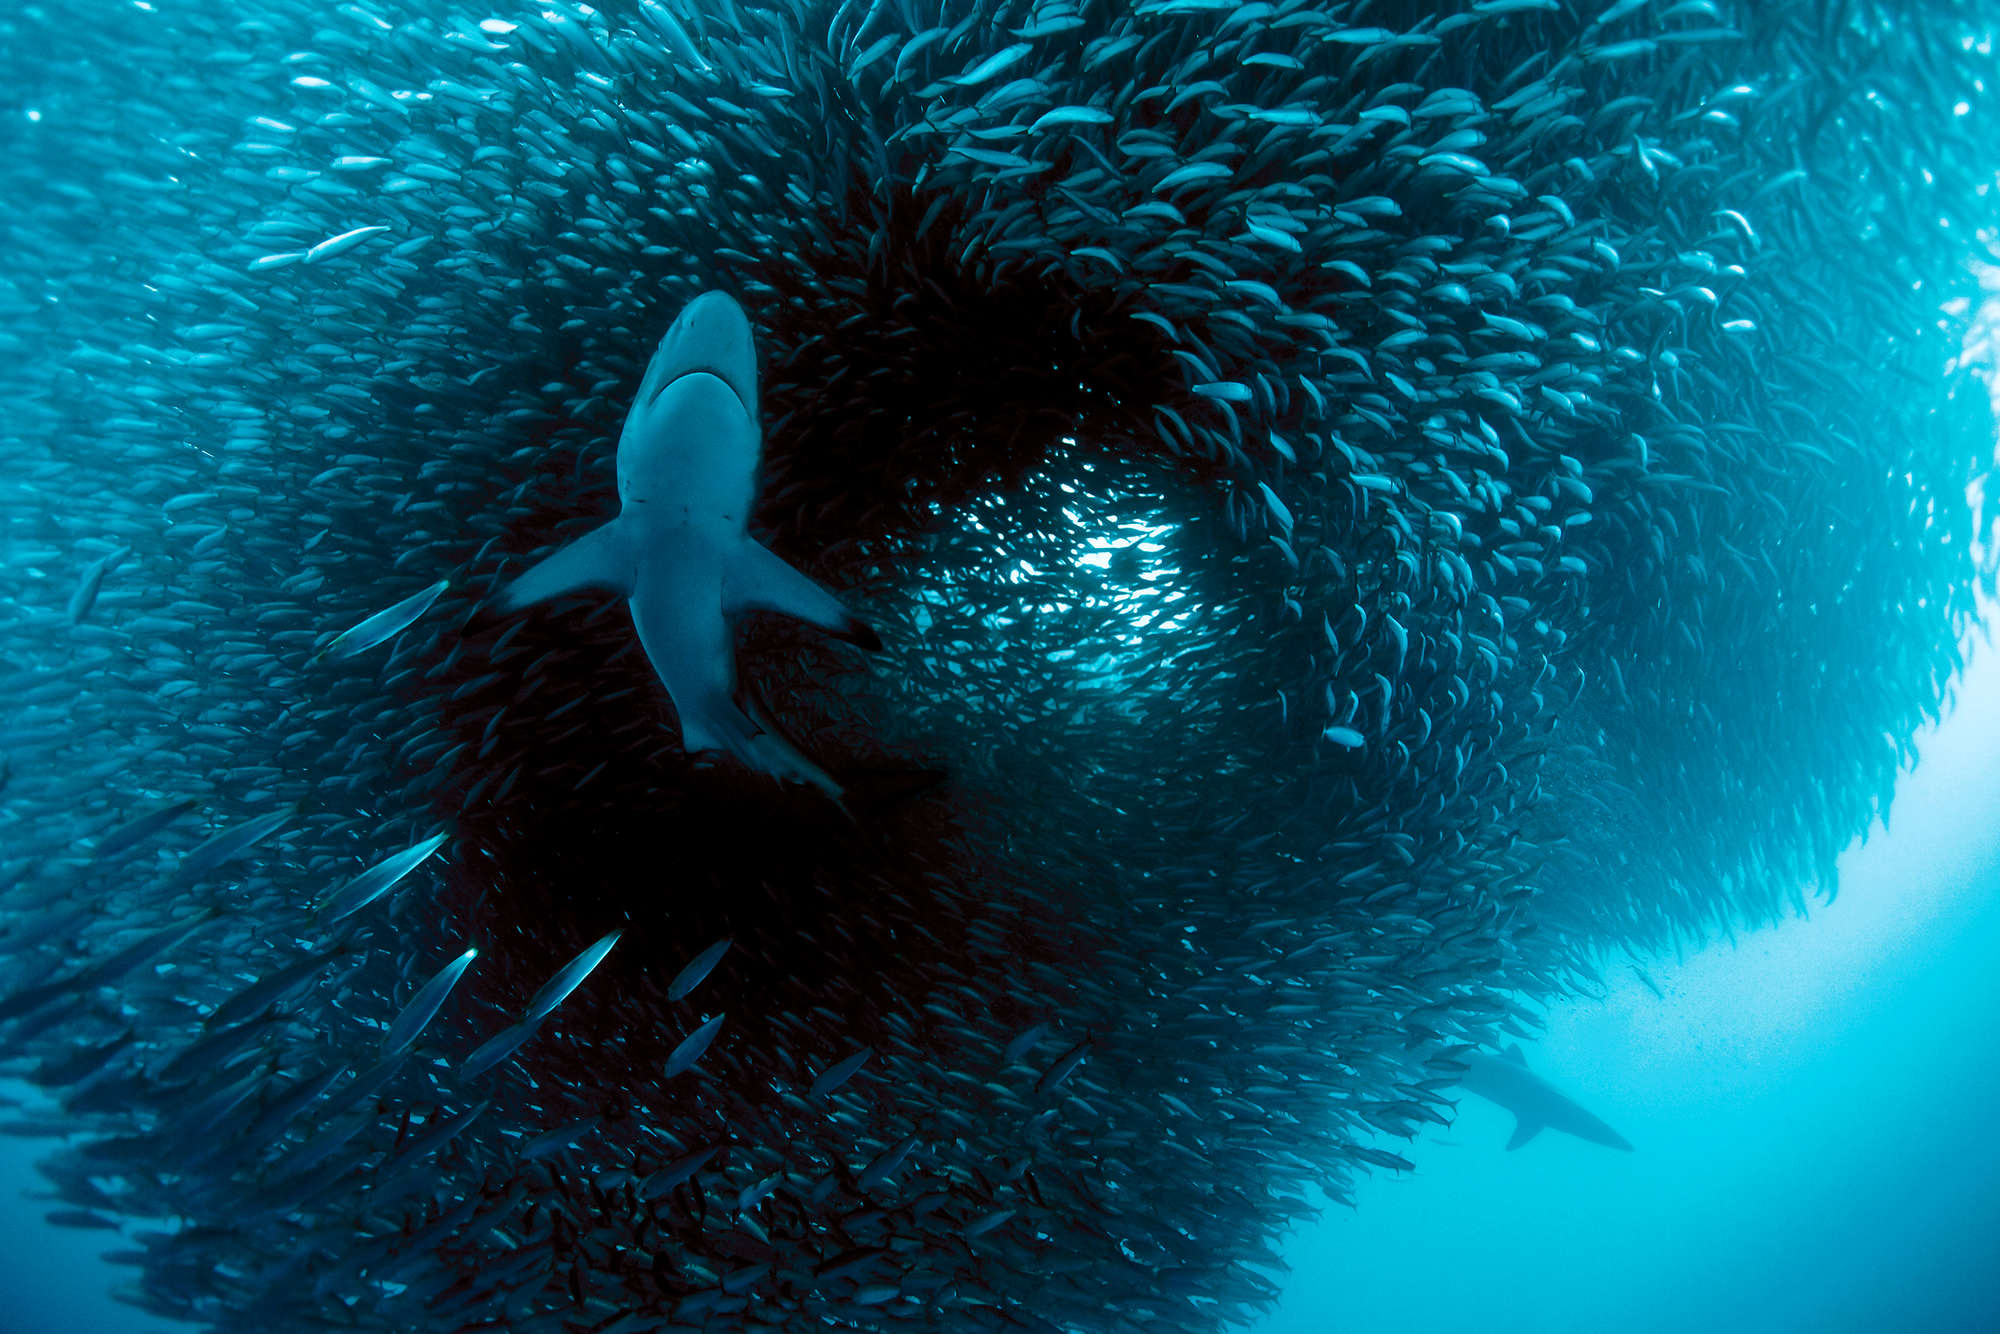             Fotomurali marino con caccia allo squalo su pregiato pile liscio
        